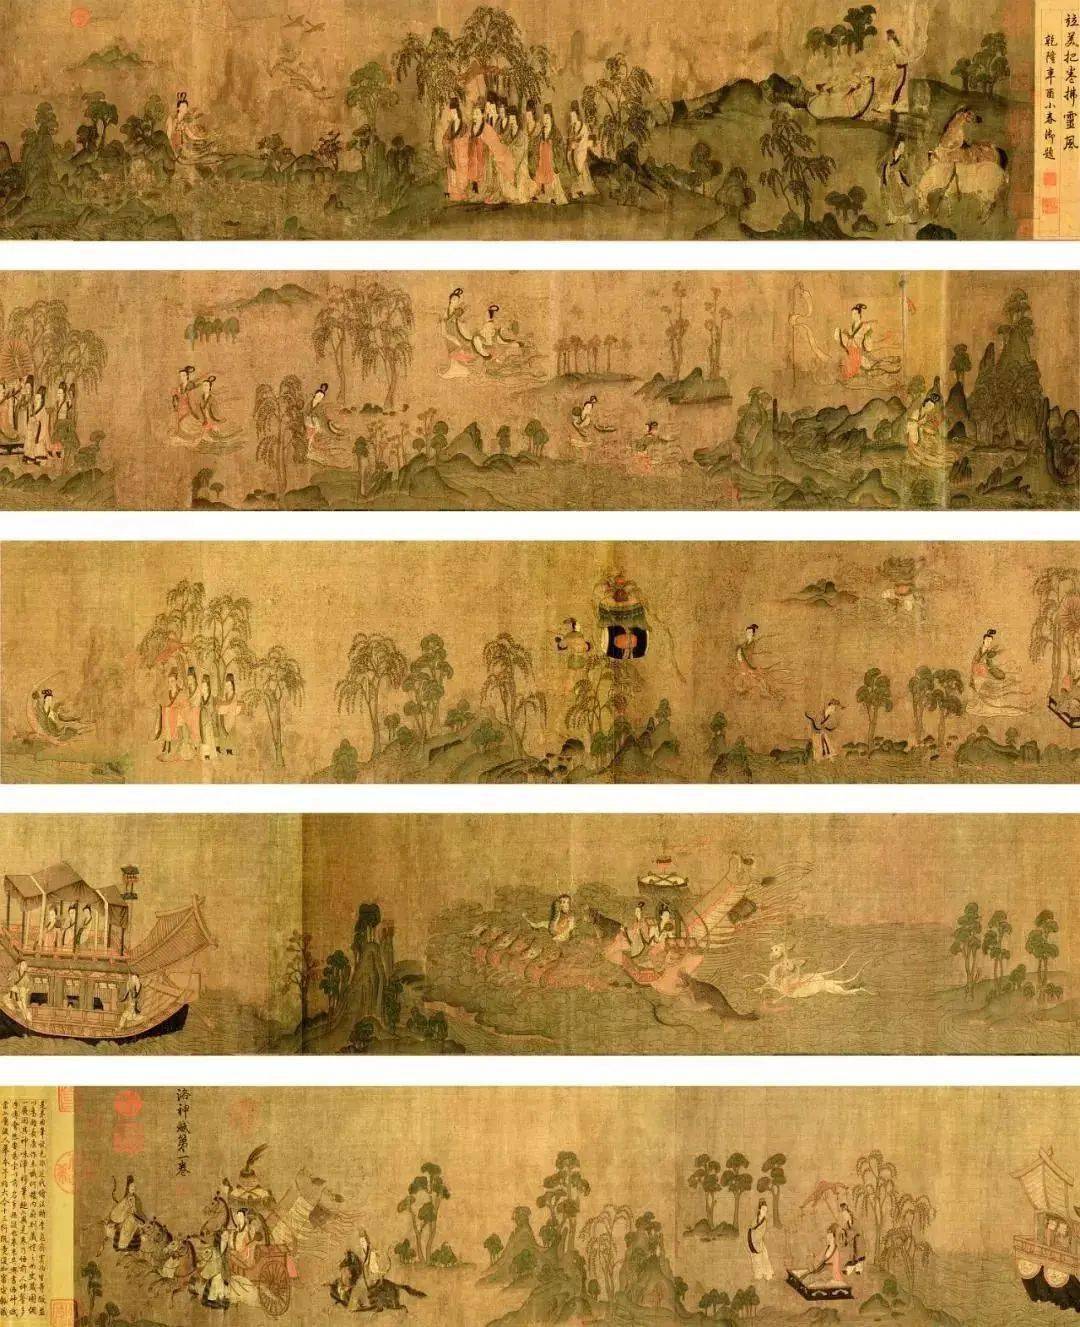 其中著有《洛神赋图》名列中国古代十大名画之列,由此足见《女史箴图